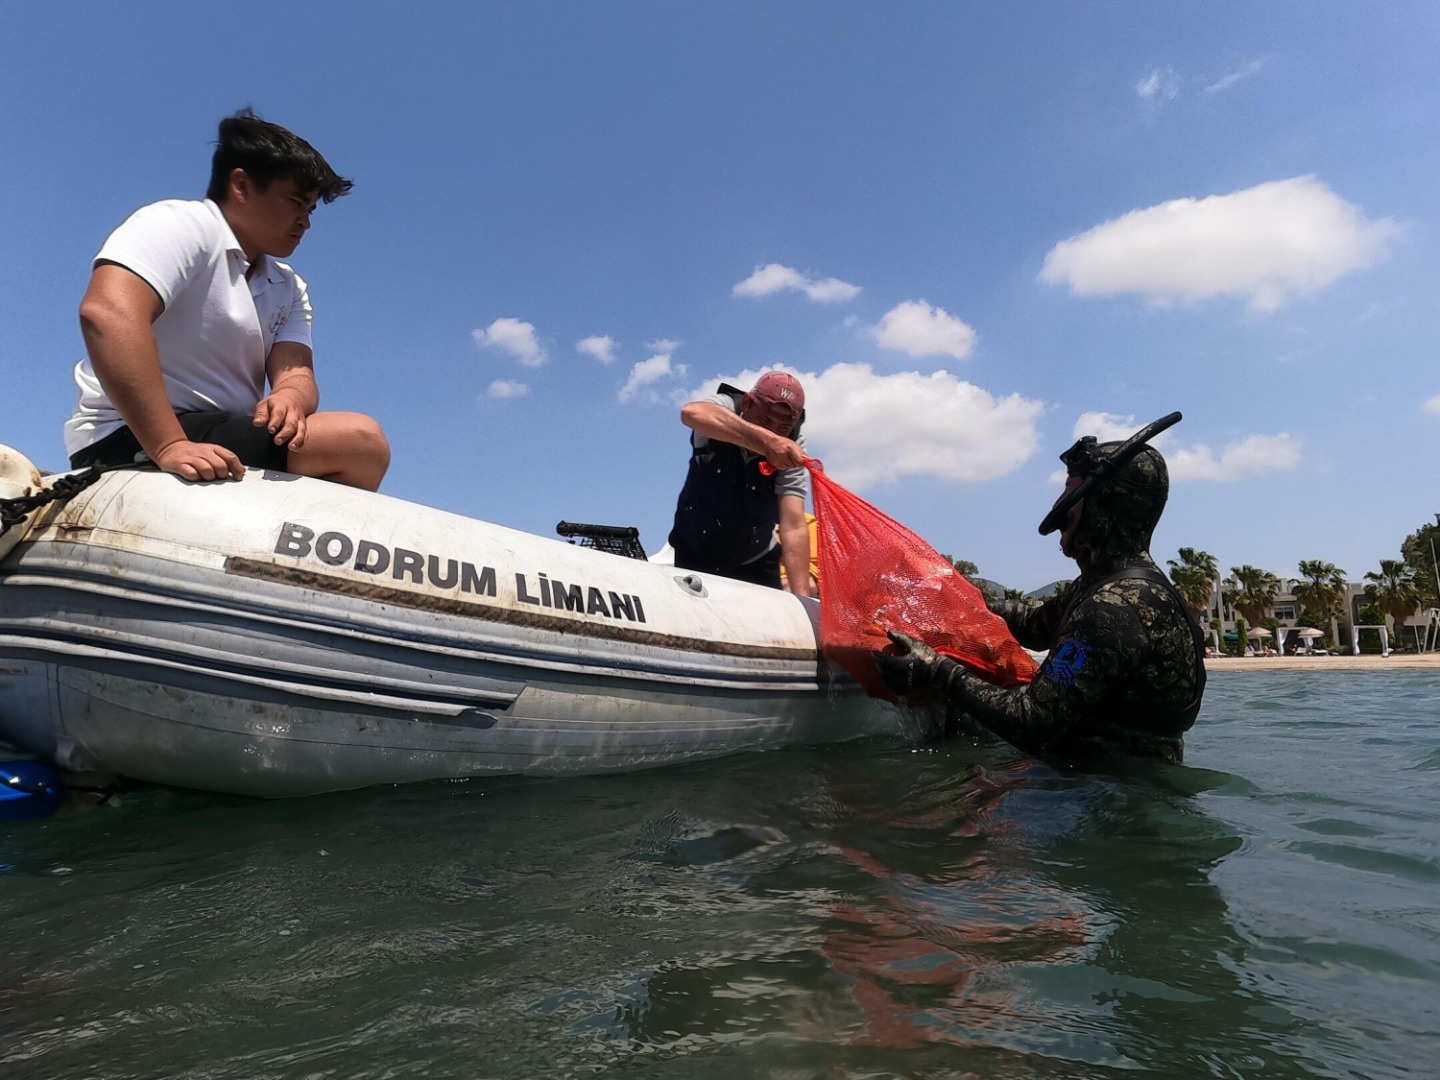 Sahilden geçenler gözlerini alamadı: Denizin dibine daldılar 342 kilo çıkardılar 5